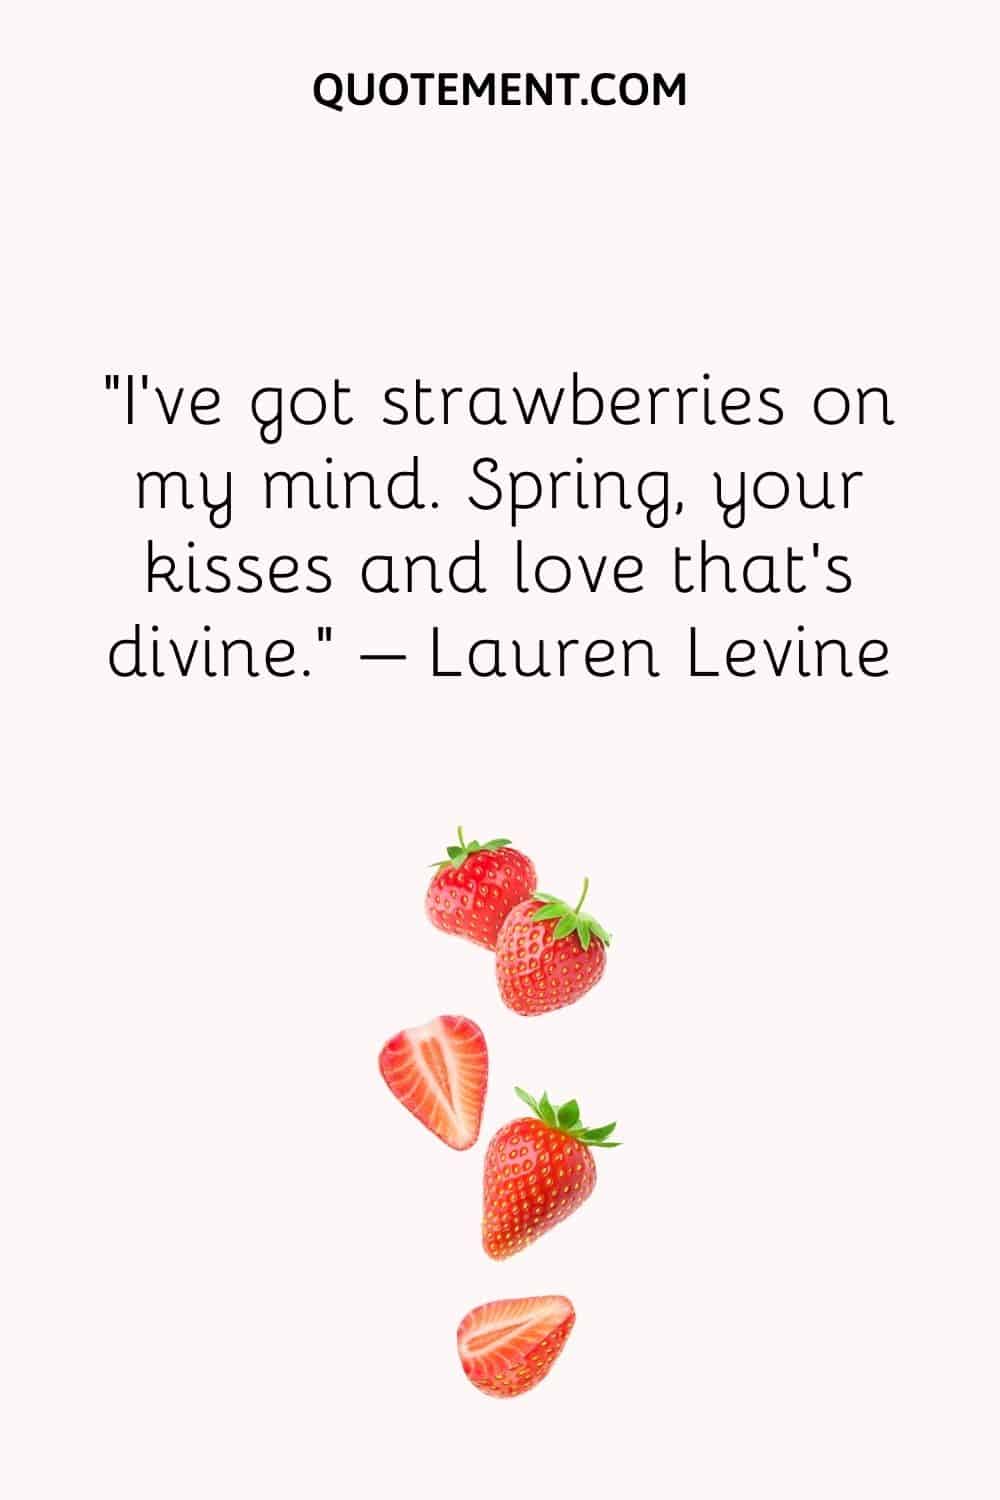 I’ve got strawberries on my mind